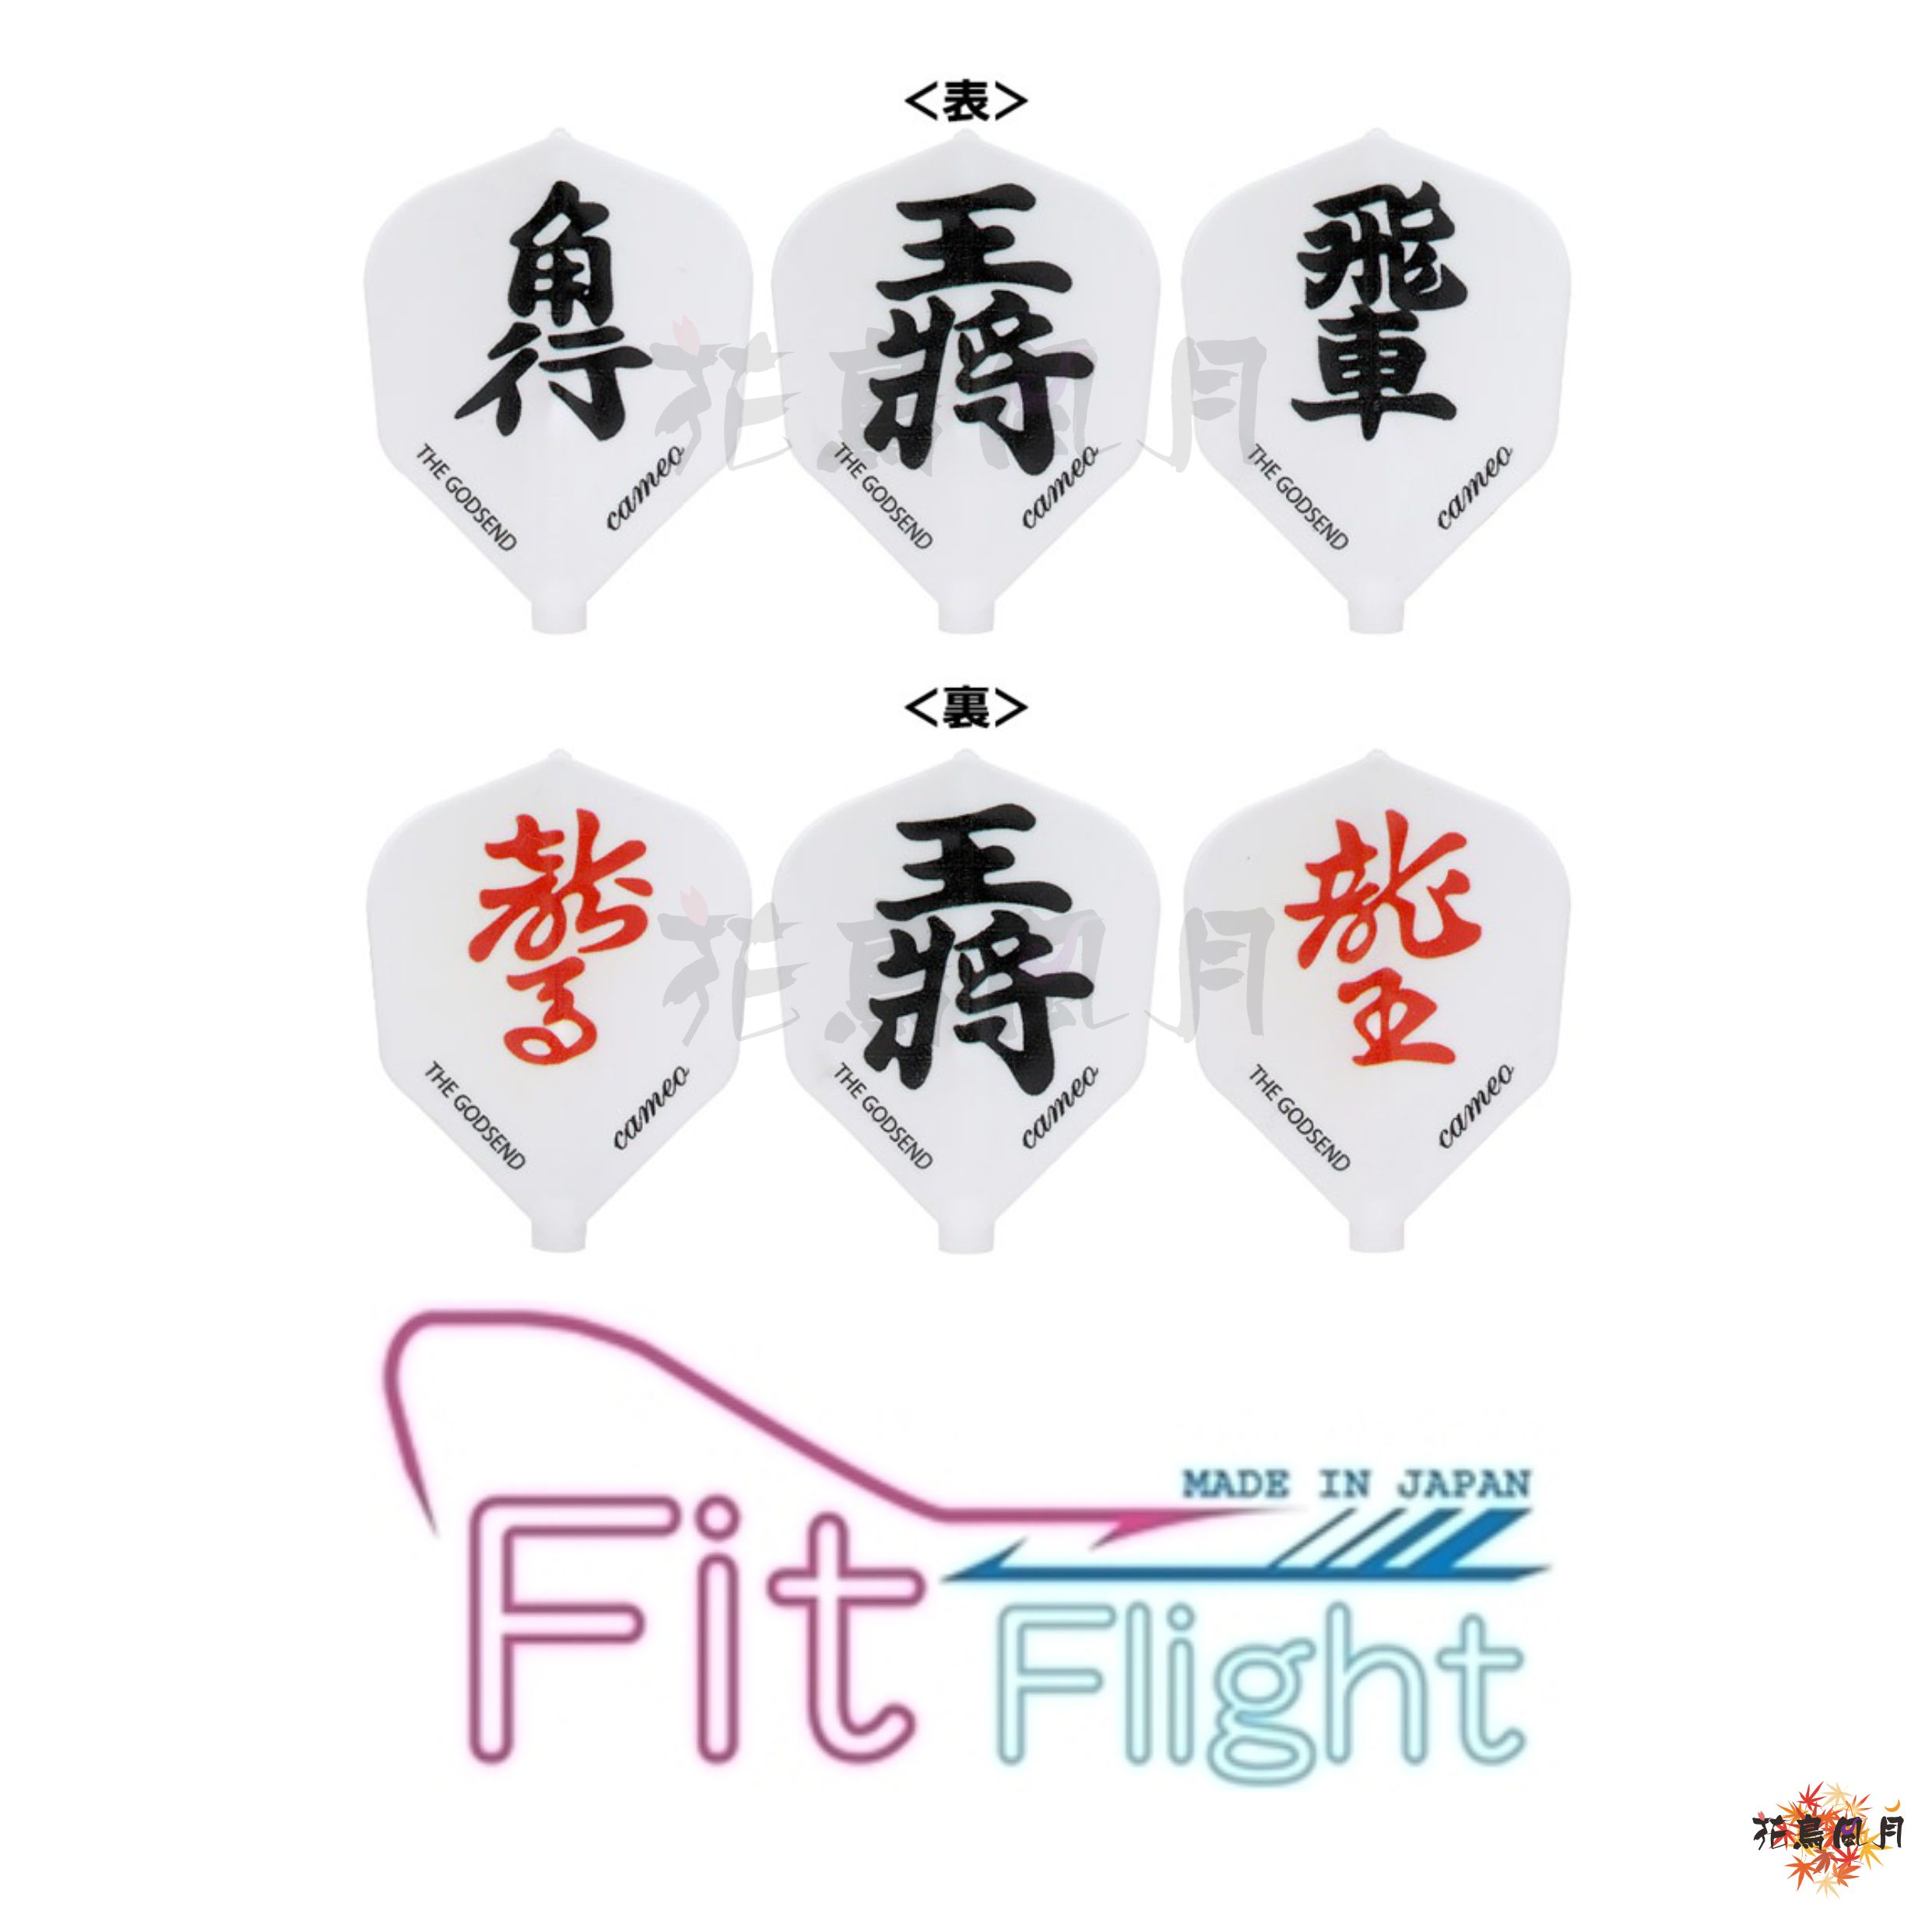 CAMEOカメオ-Fit-Flightフィットフライト-GODSEND-FLIGHT-SHOGI将棋.jpg